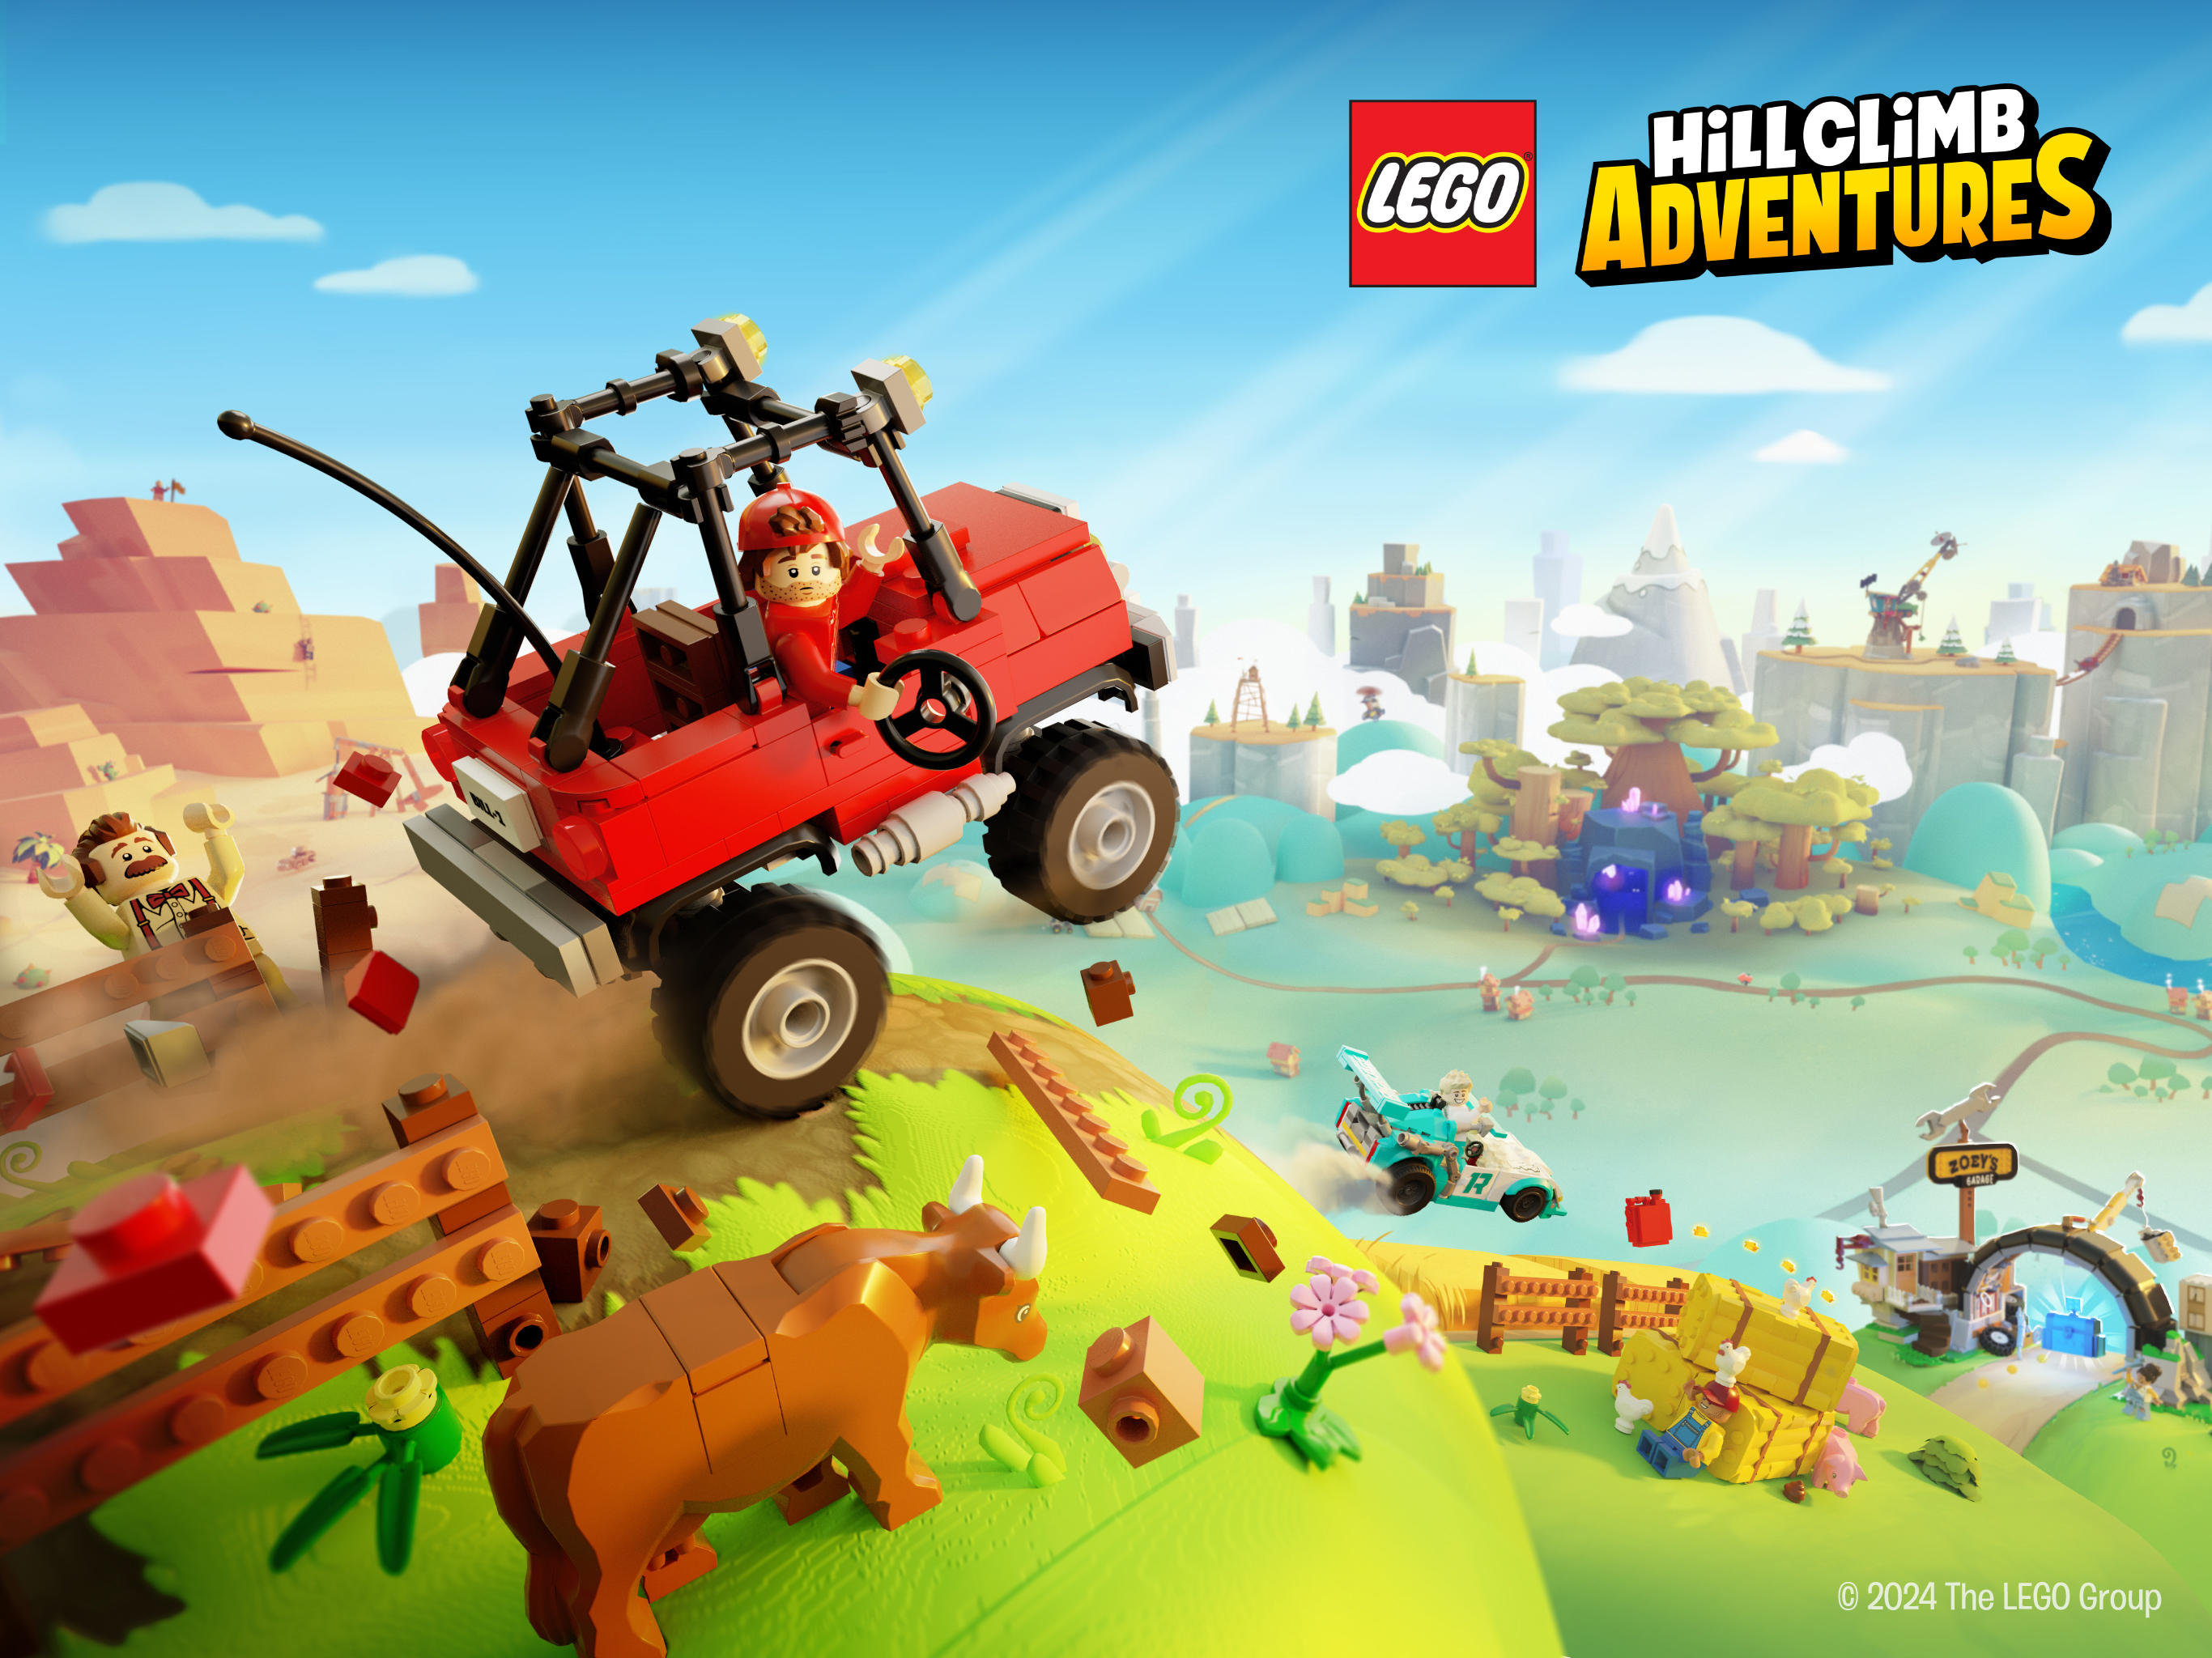 Screenshot of LEGO® Hill Climb Adventures